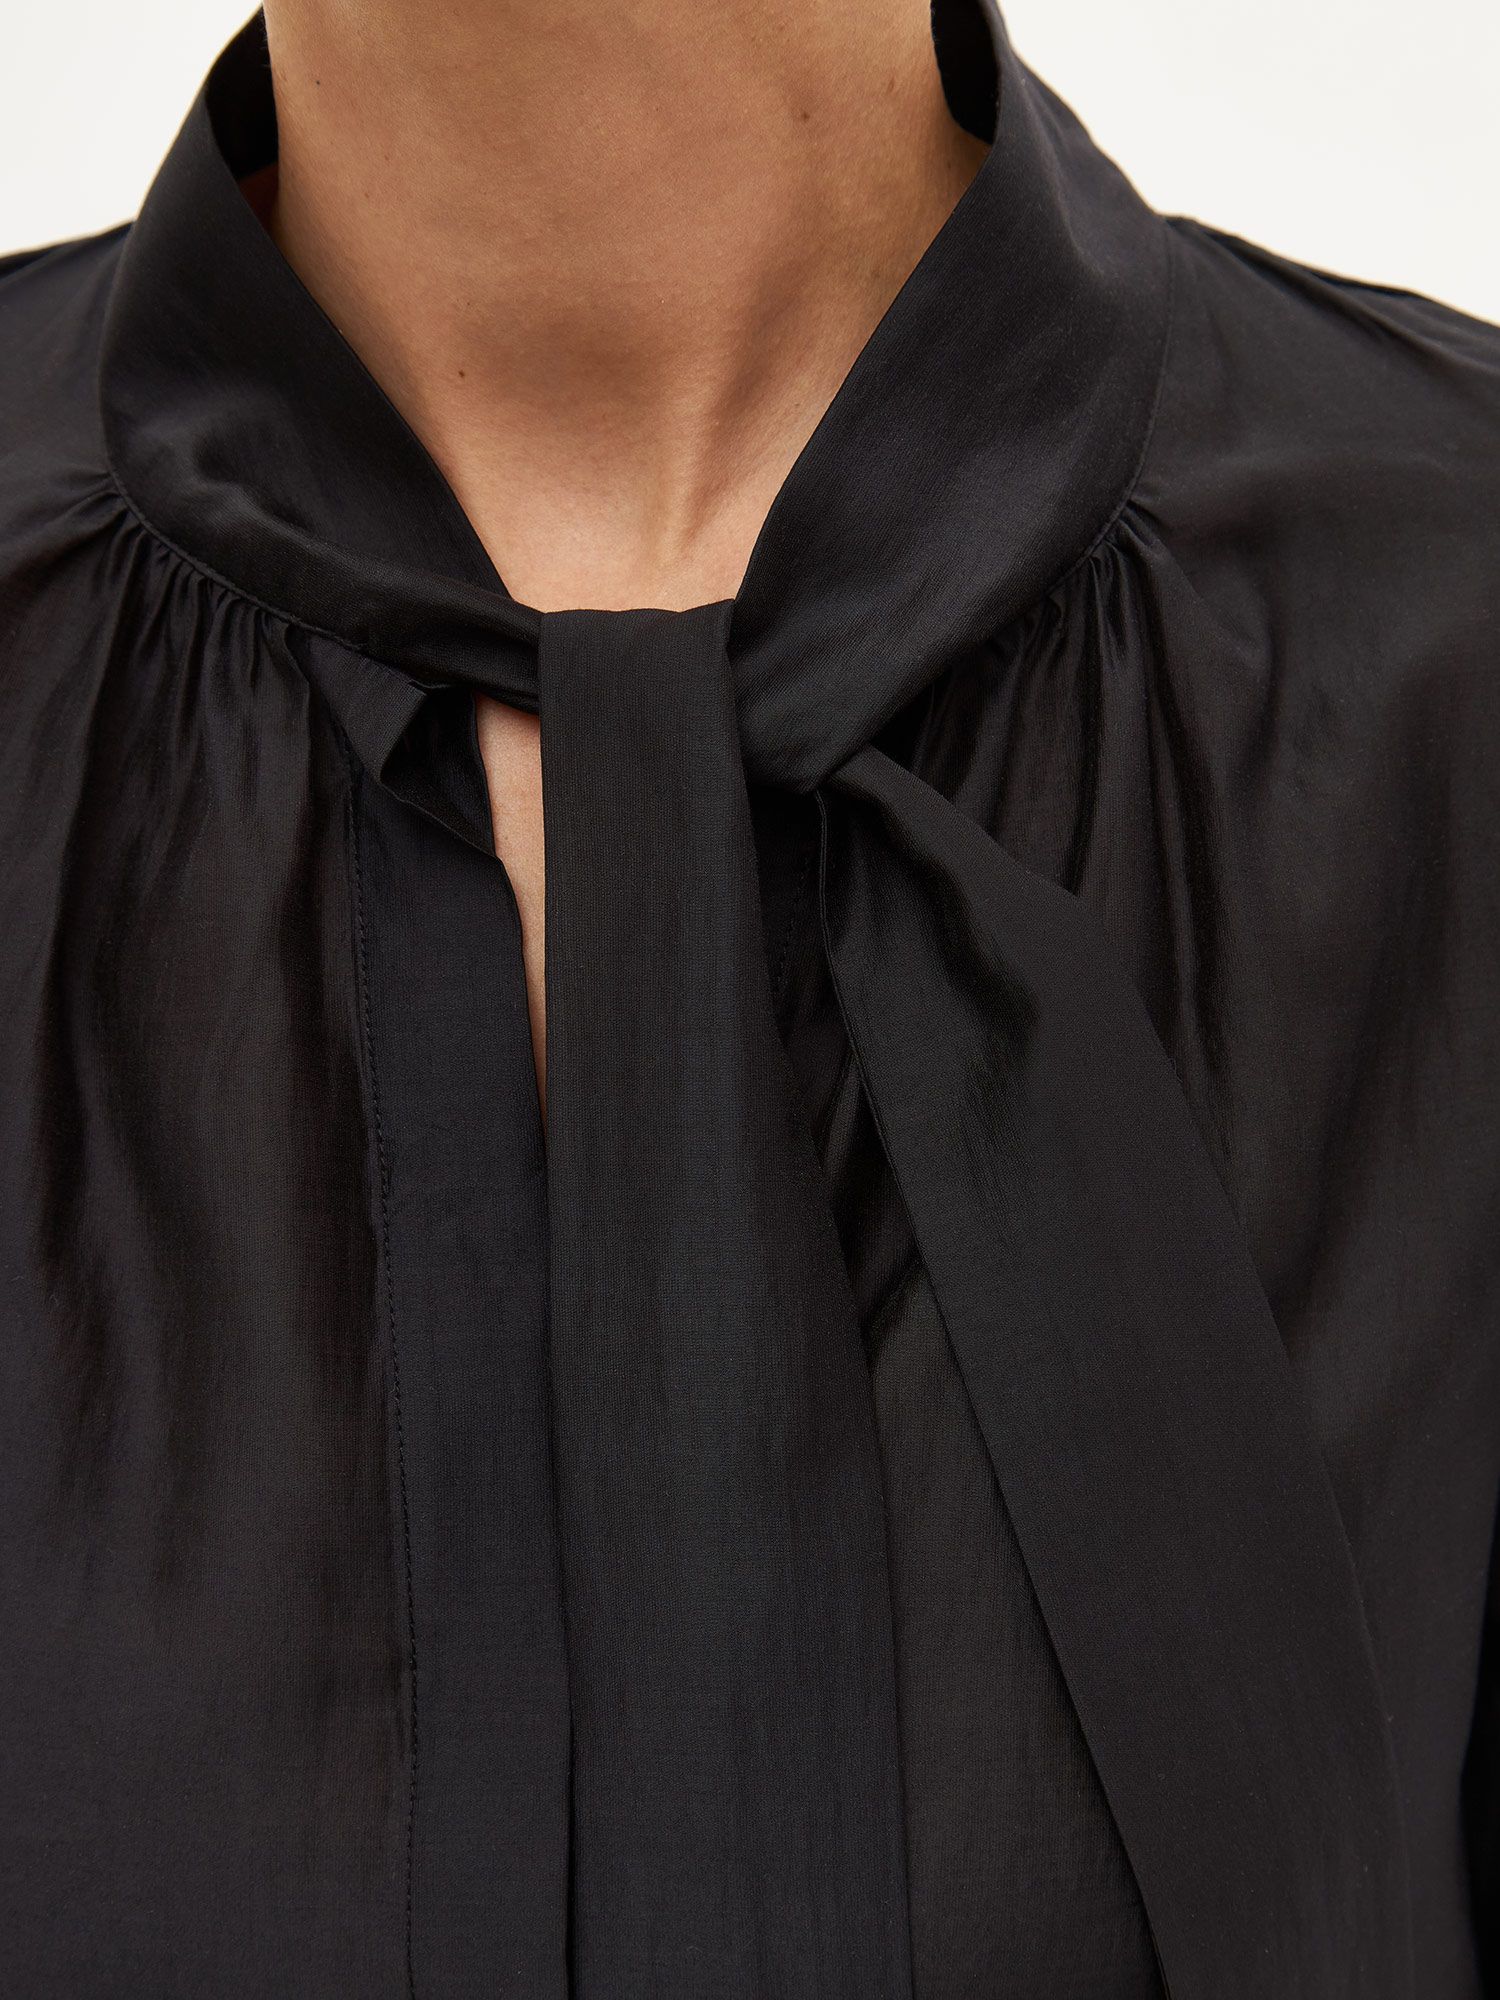 Блуза с бантом из экологичного модала. Изображение 3